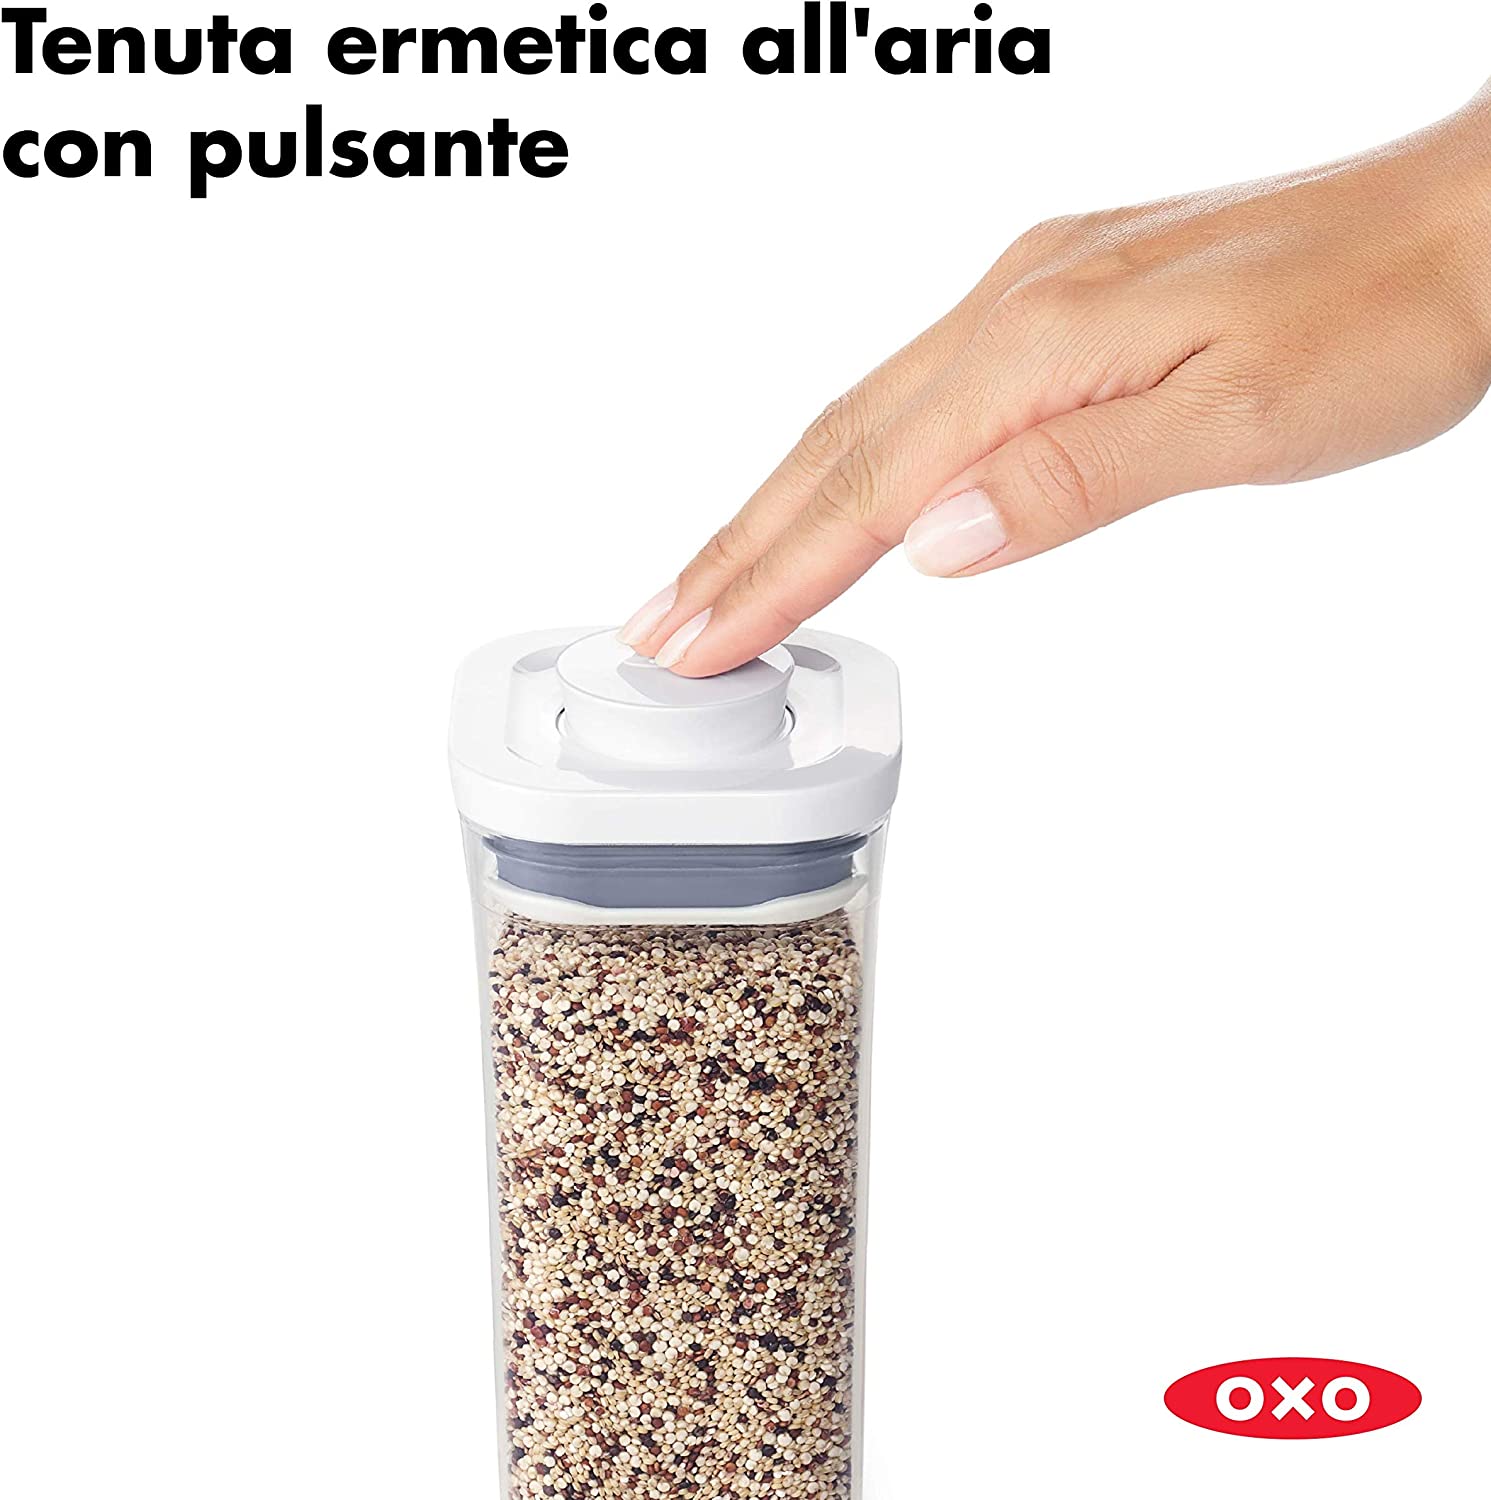 Pop OXO contenitore per dispesa apribile con una mano 1,1 L